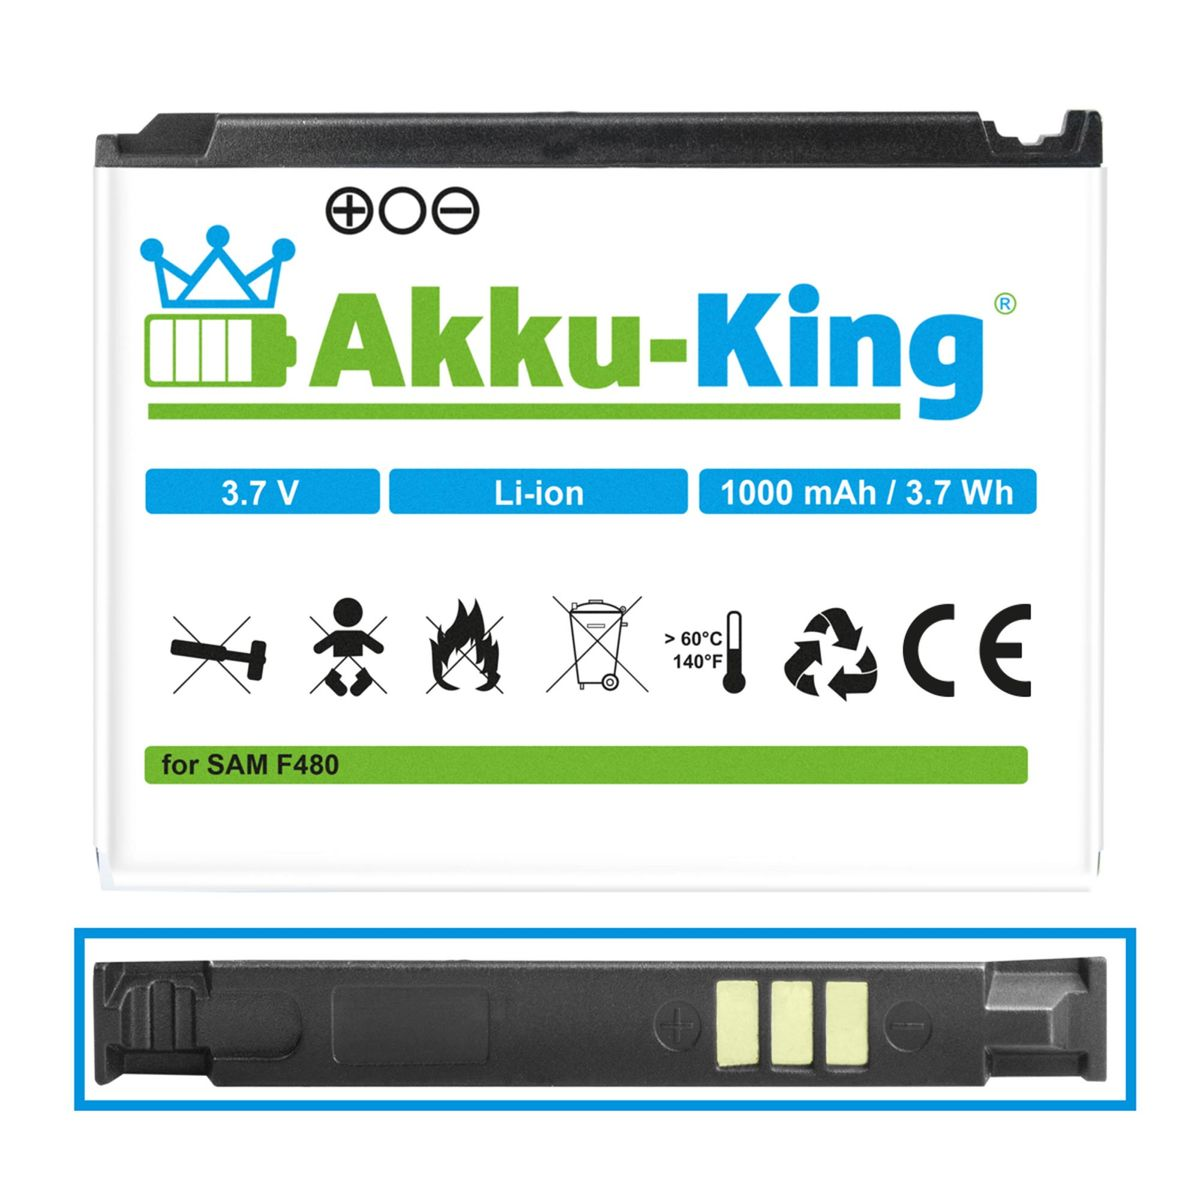 Akku mit 3.7 Li-Ion kompatibel Handy-Akku, AB553446CE 1000mAh Samsung Volt, AKKU-KING